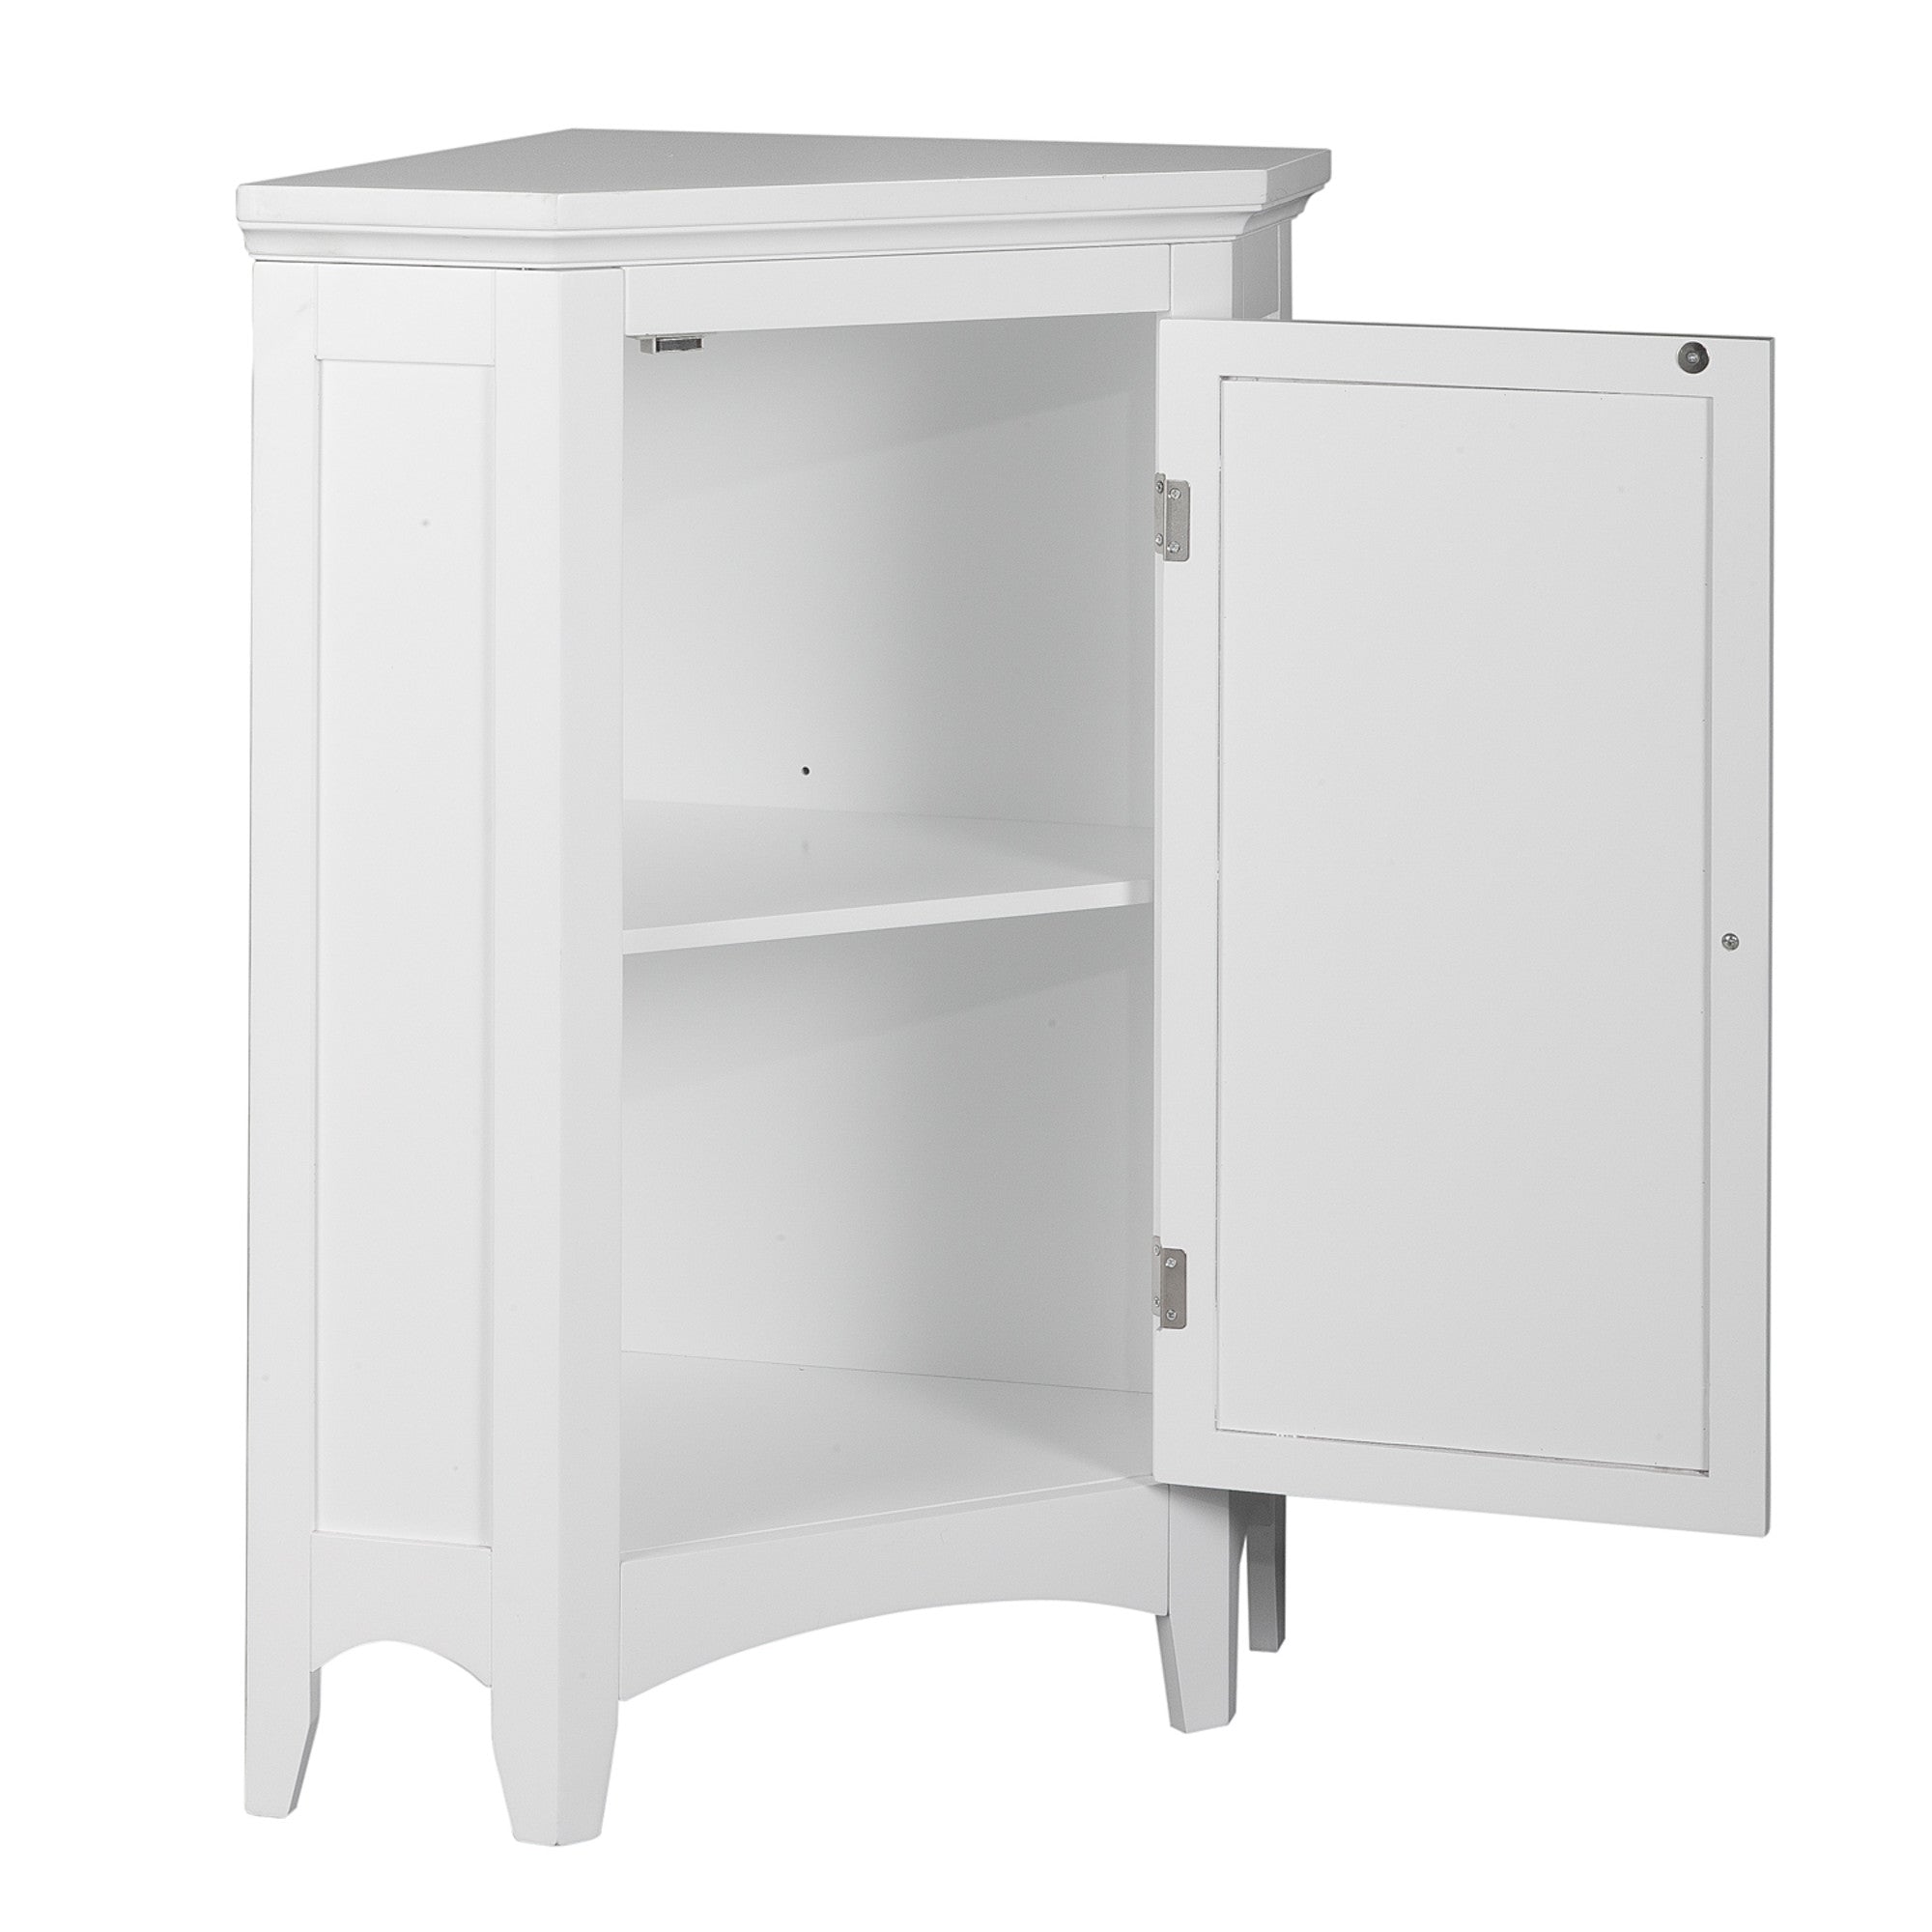 Teamson Home Glancy Wooden Corner Floor Cabinet with Shutter Door, White